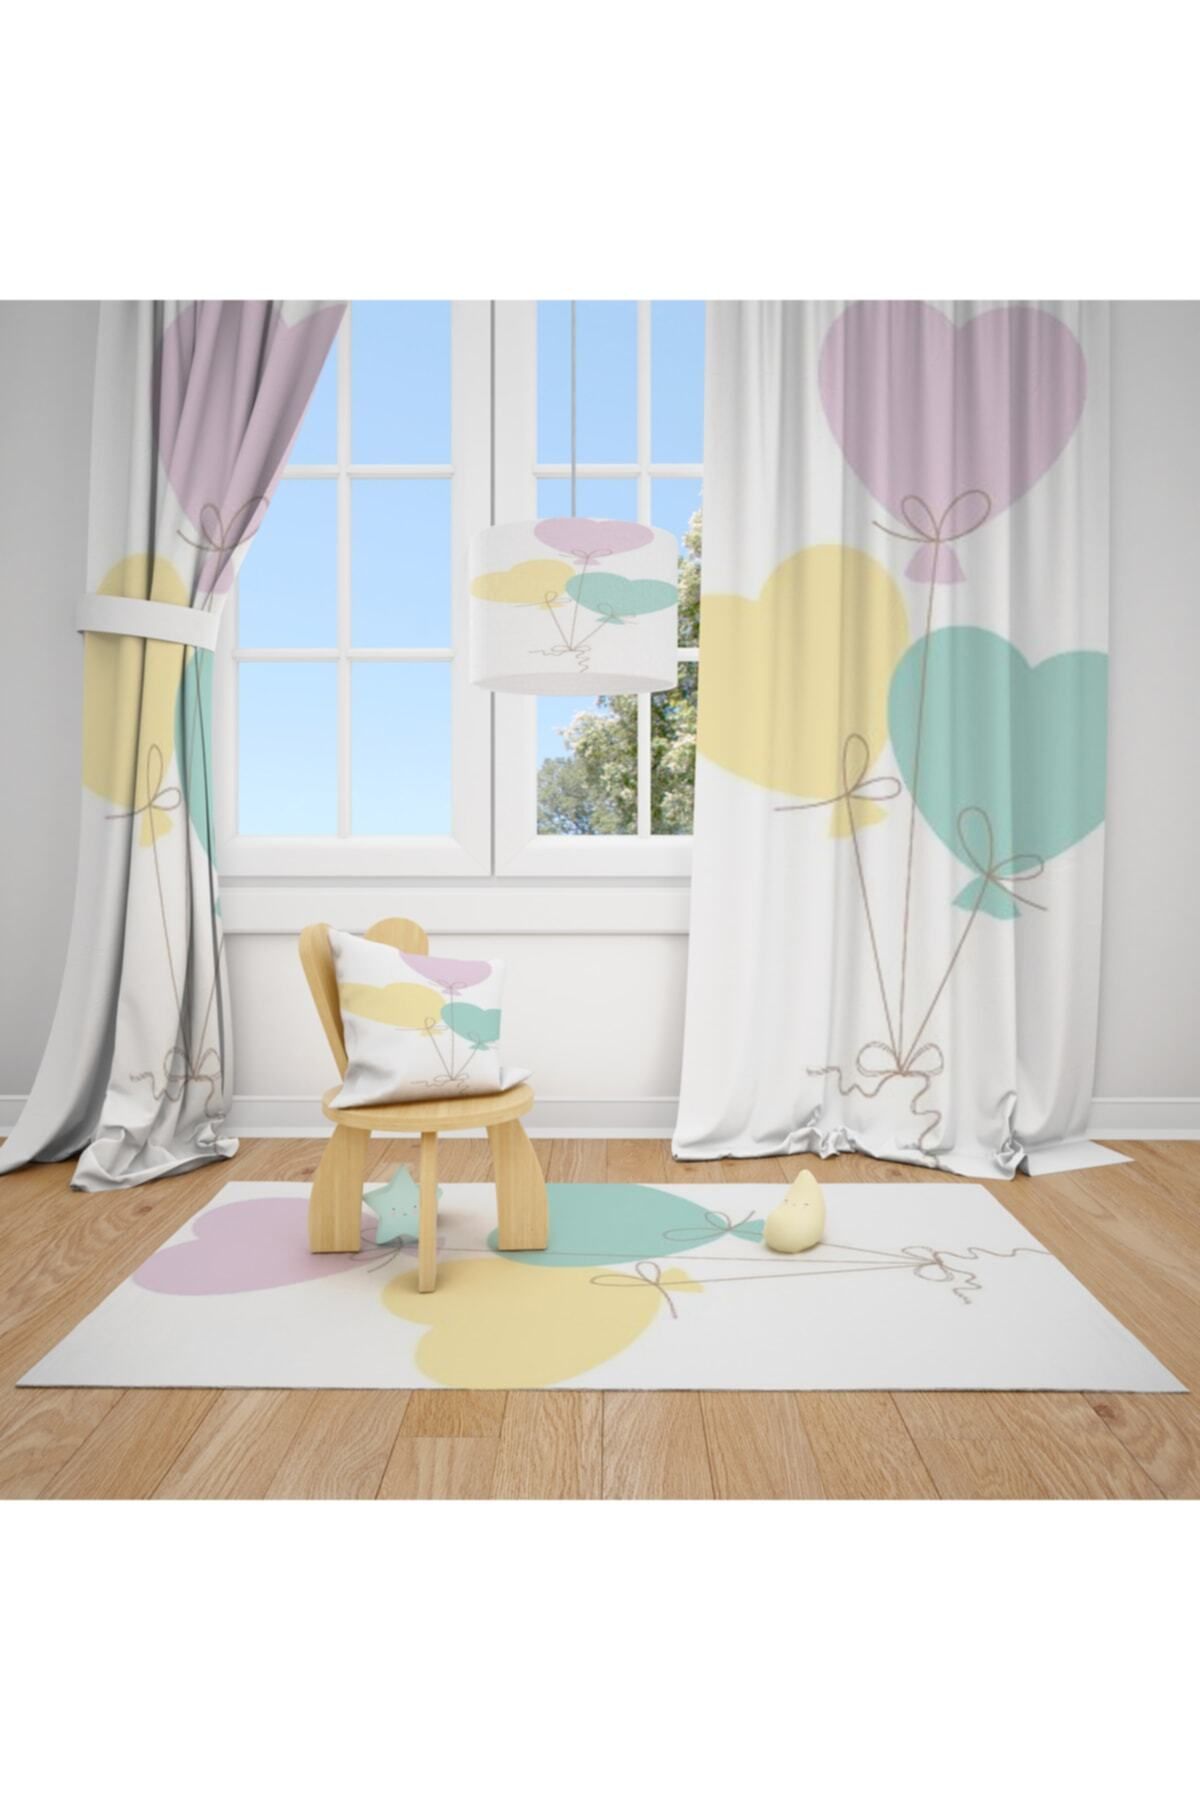 CİCİ ODAM 2 Kanat Renkli Balonlar Çocuk Bebek Odası Perdesi Fon Perde